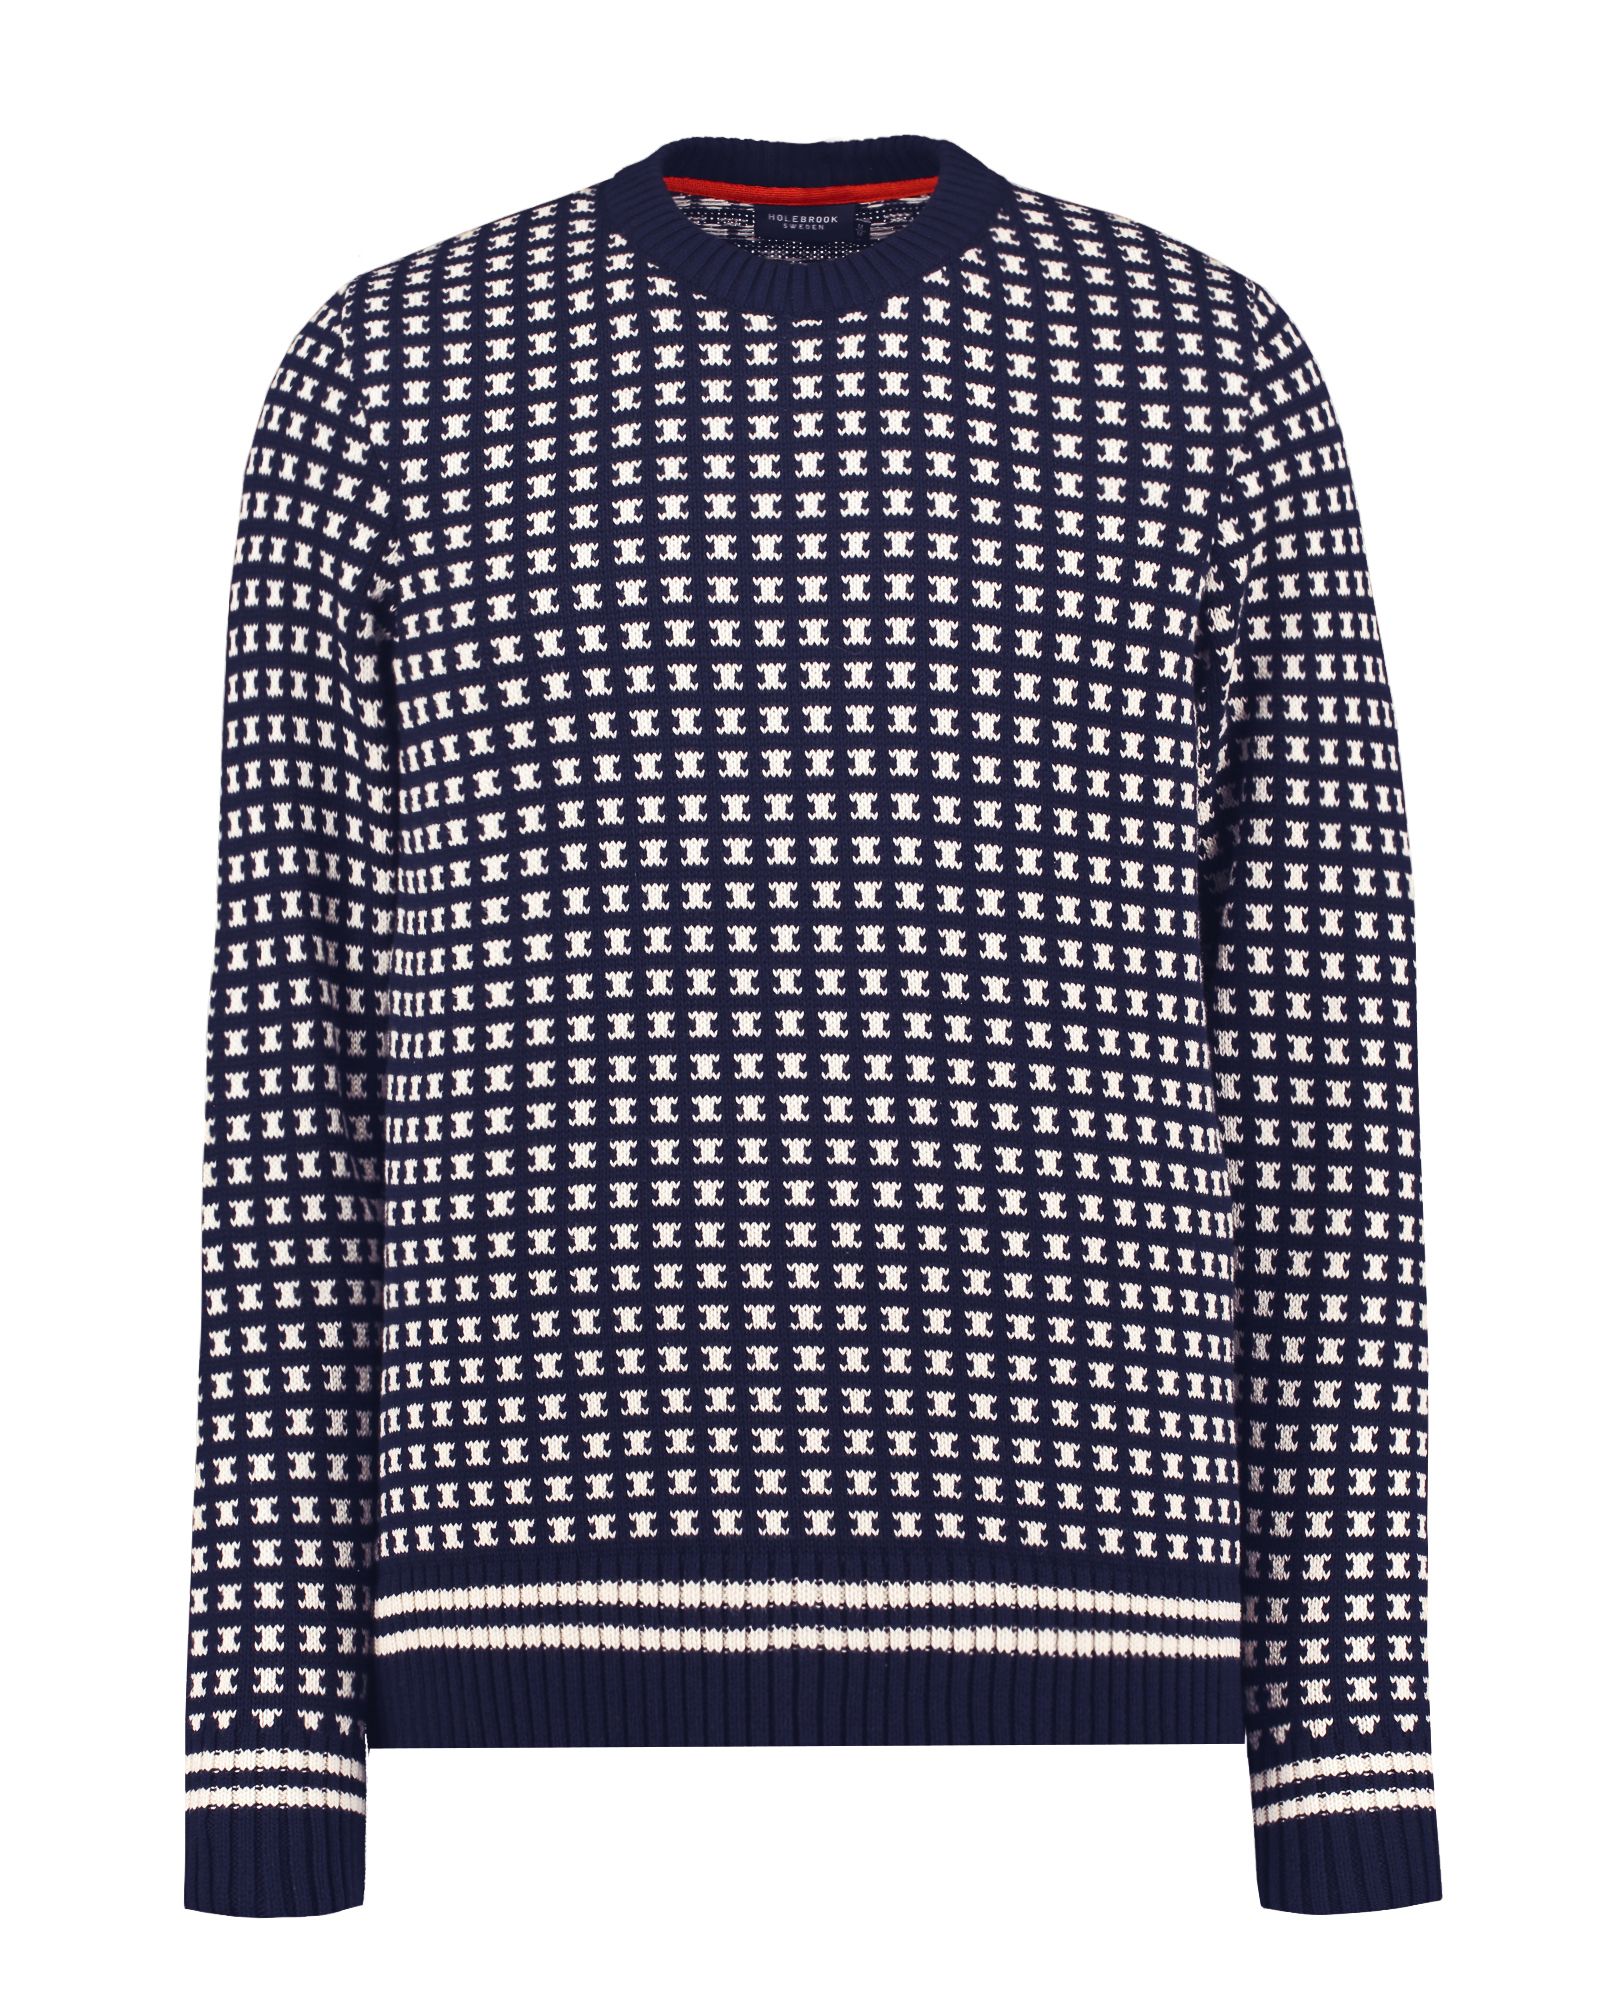 Brynolf Knitted Cotton Sweater - Navy/Ecru